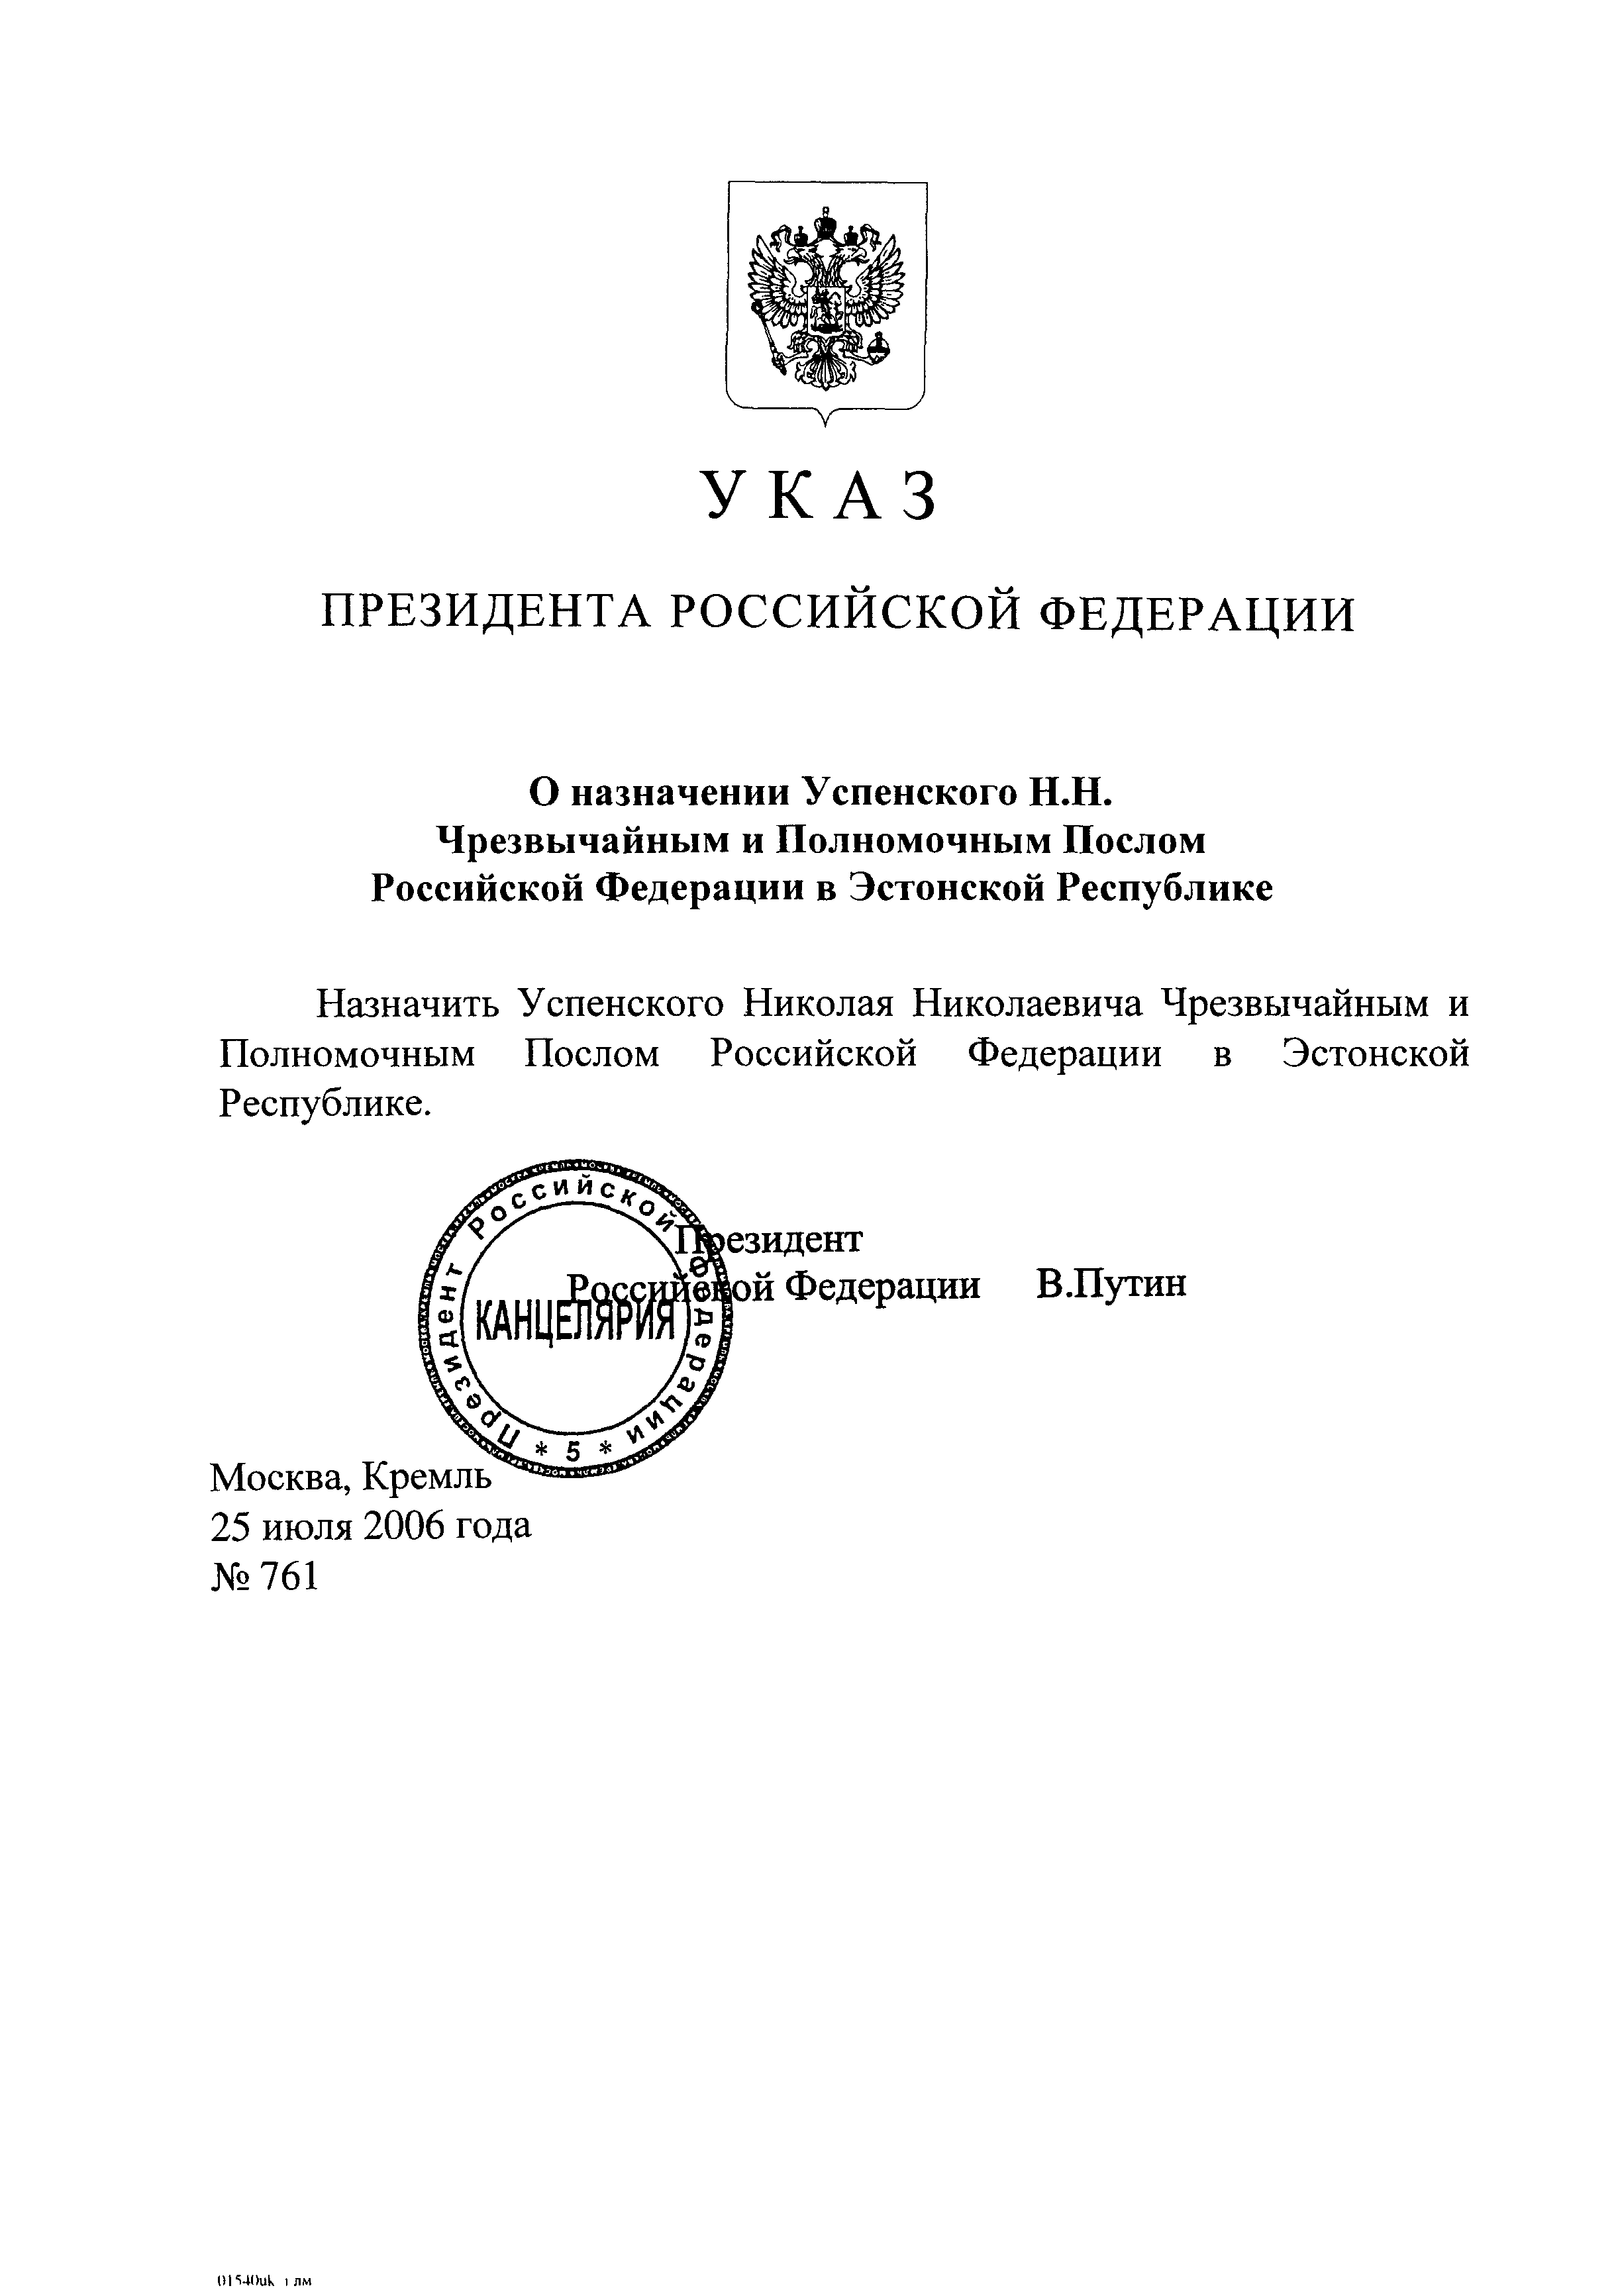 Указ Президента Российской Федерации От 25.07.2006 № 763